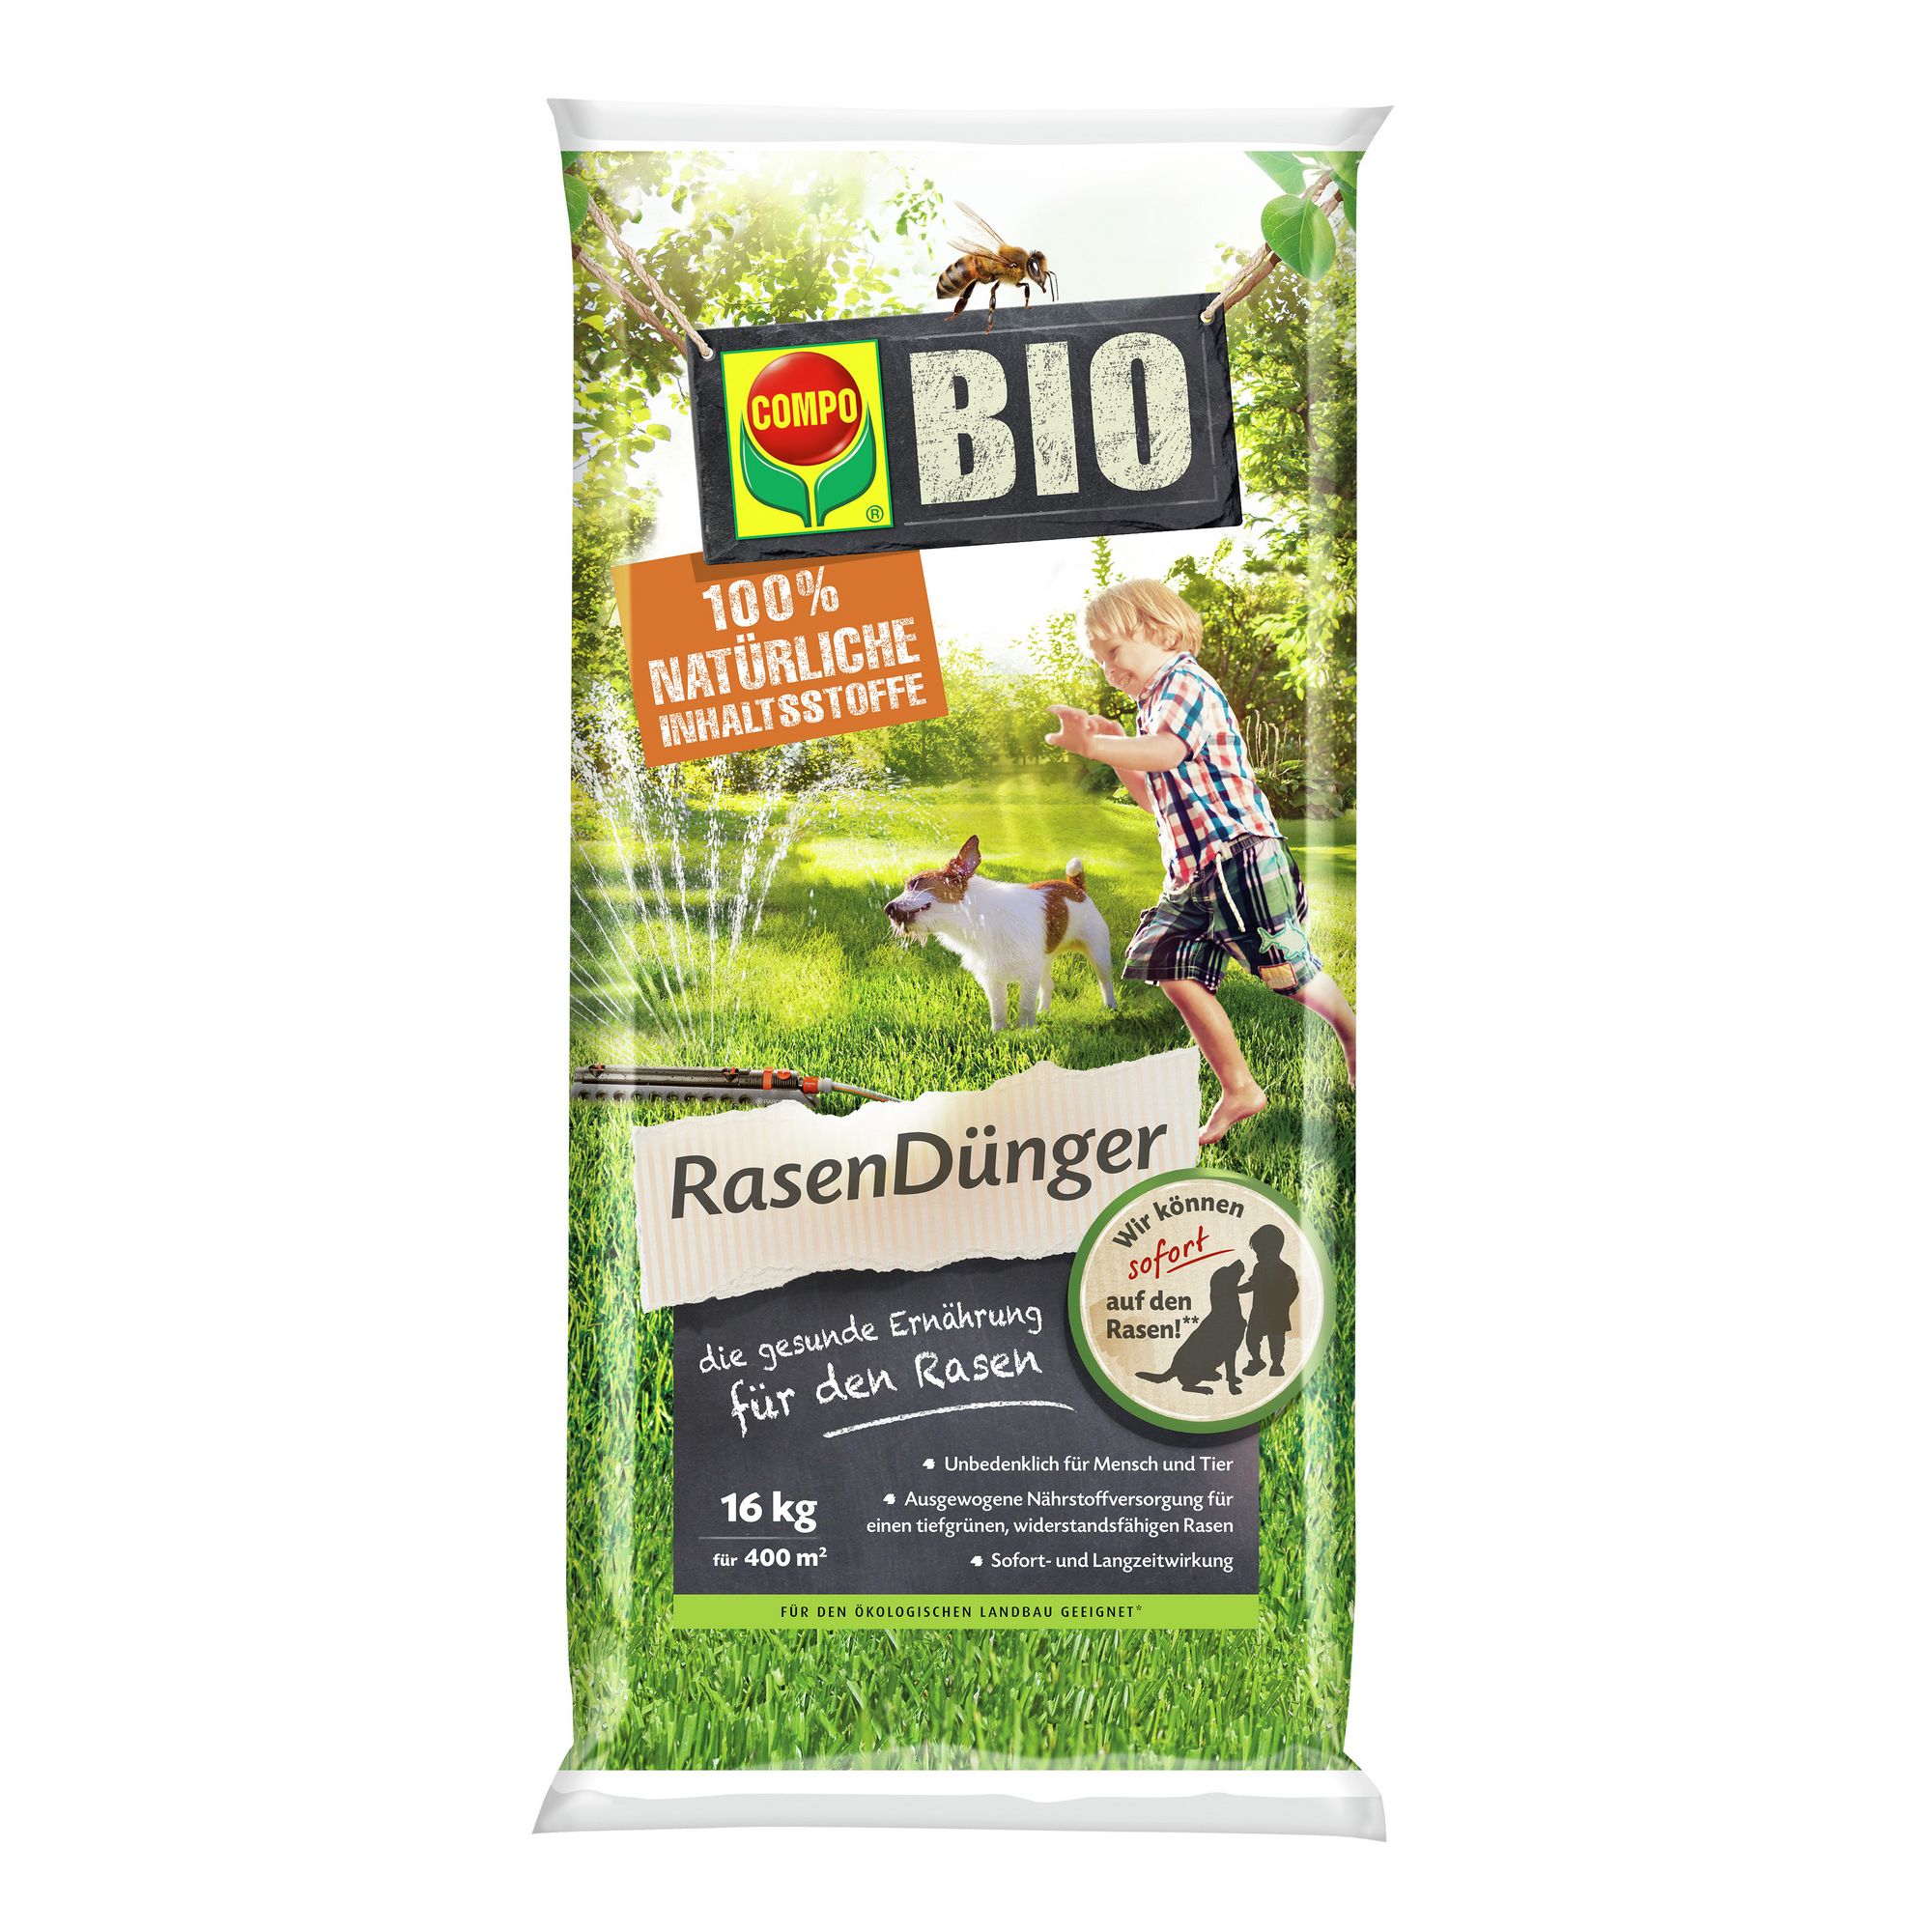 Bio Rasendünger 16 kg für ca. 400 m² + product picture